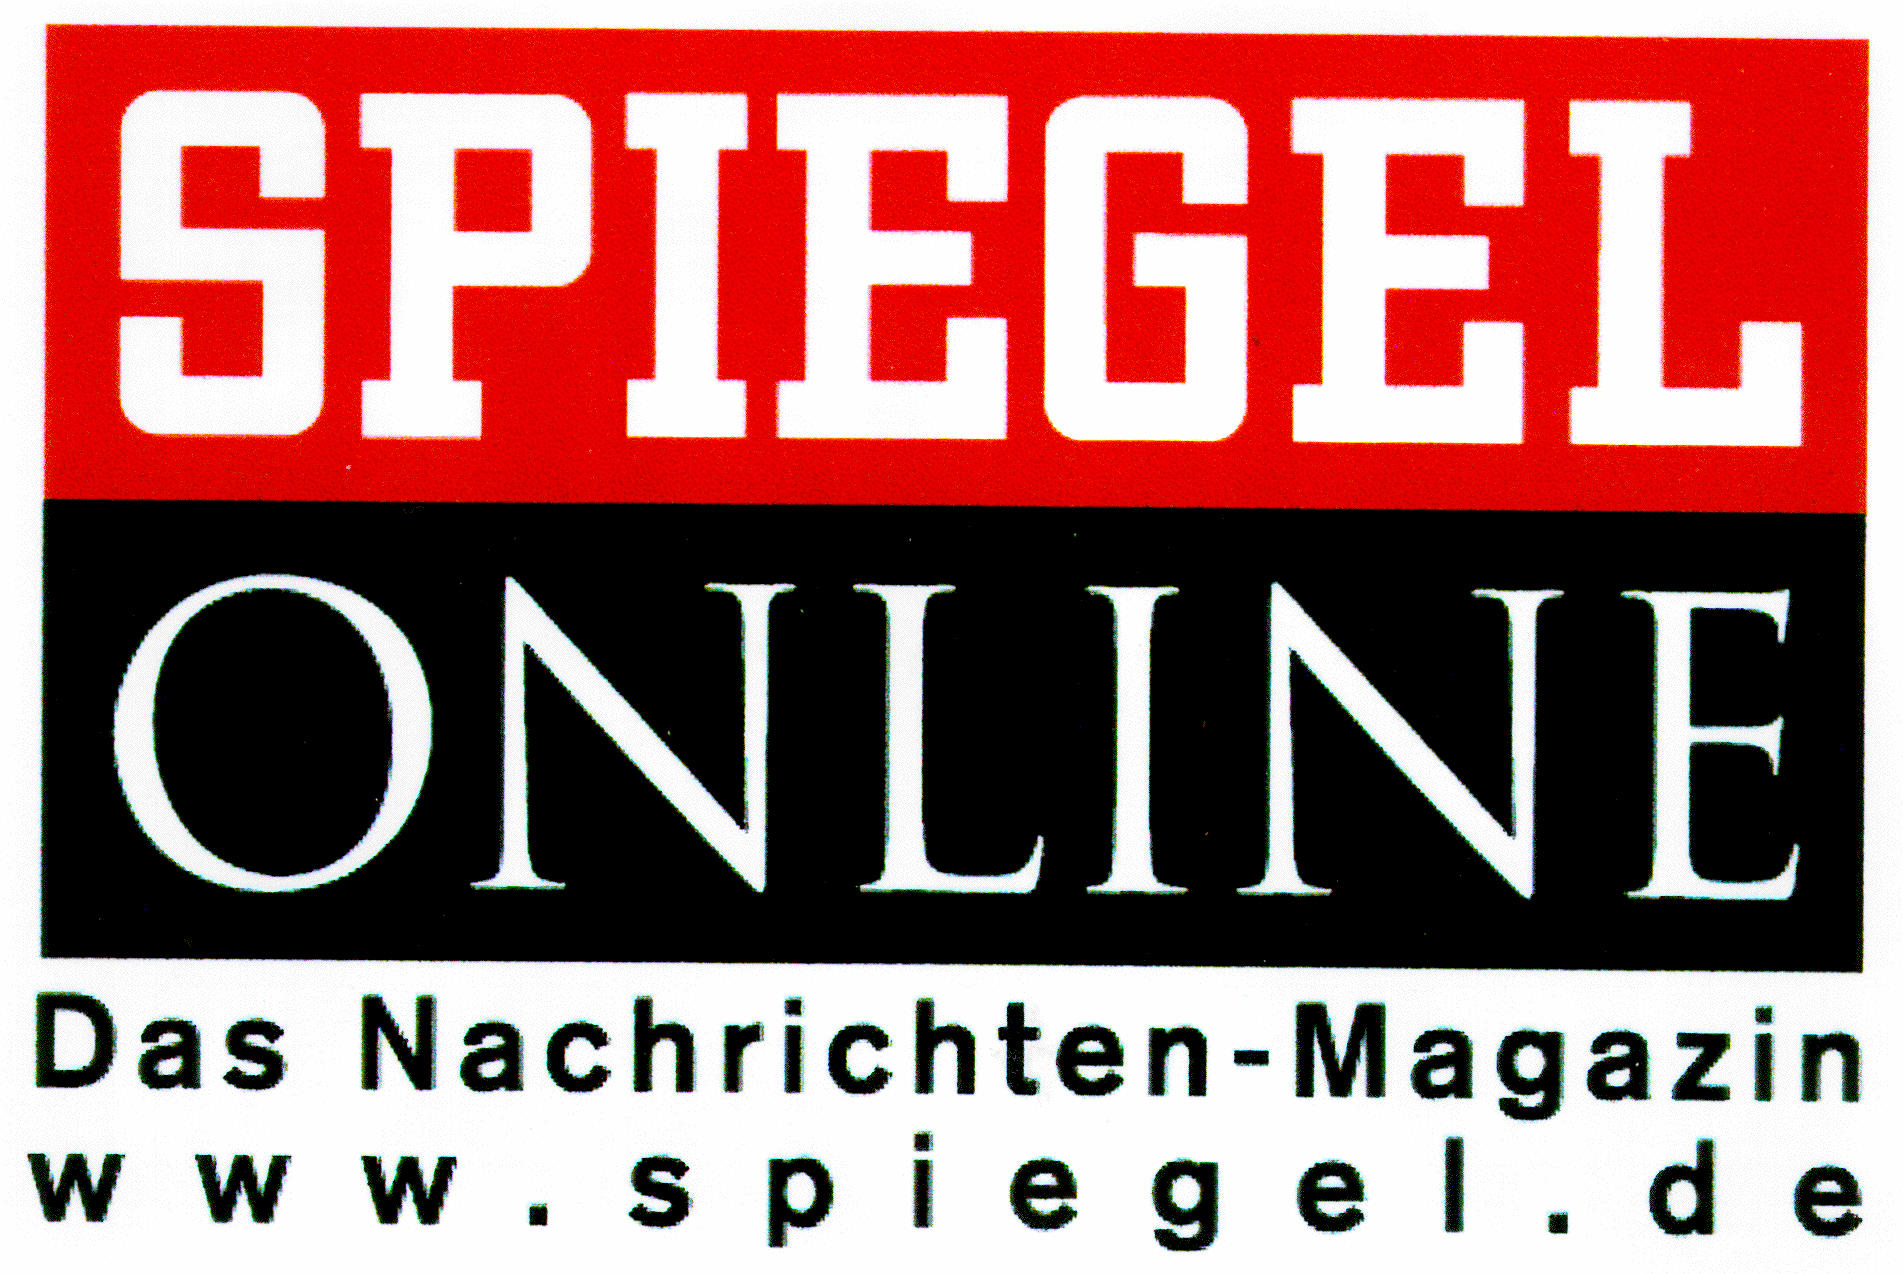 SPIEGEL ONLINE Das Nachrichten-Magazin www.spiegel.de